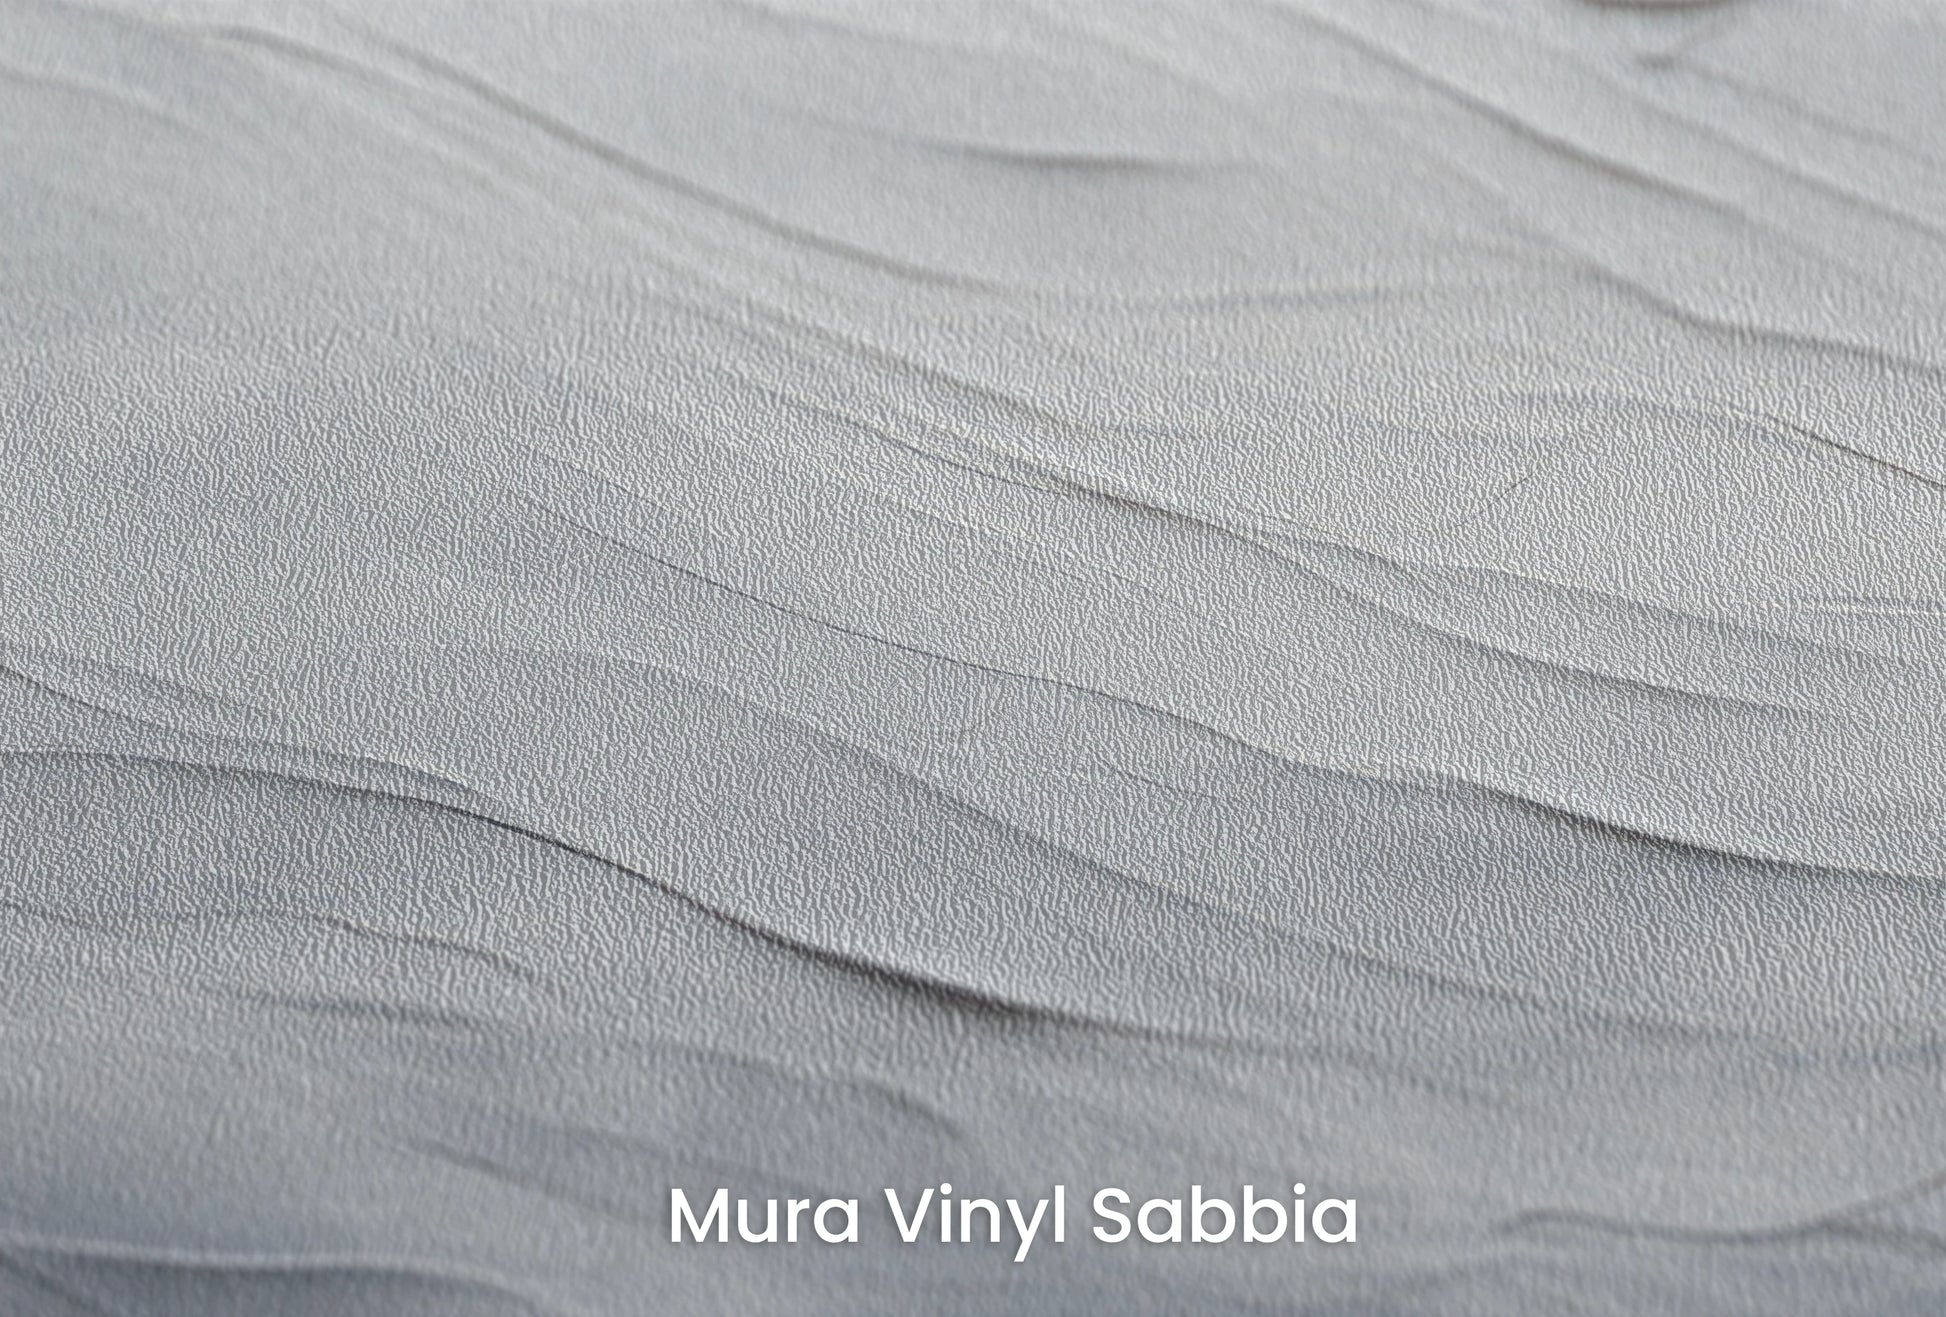 Zbliżenie na artystyczną fototapetę o nazwie Silent Whispers na podłożu Mura Vinyl Sabbia struktura grubego ziarna piasku.